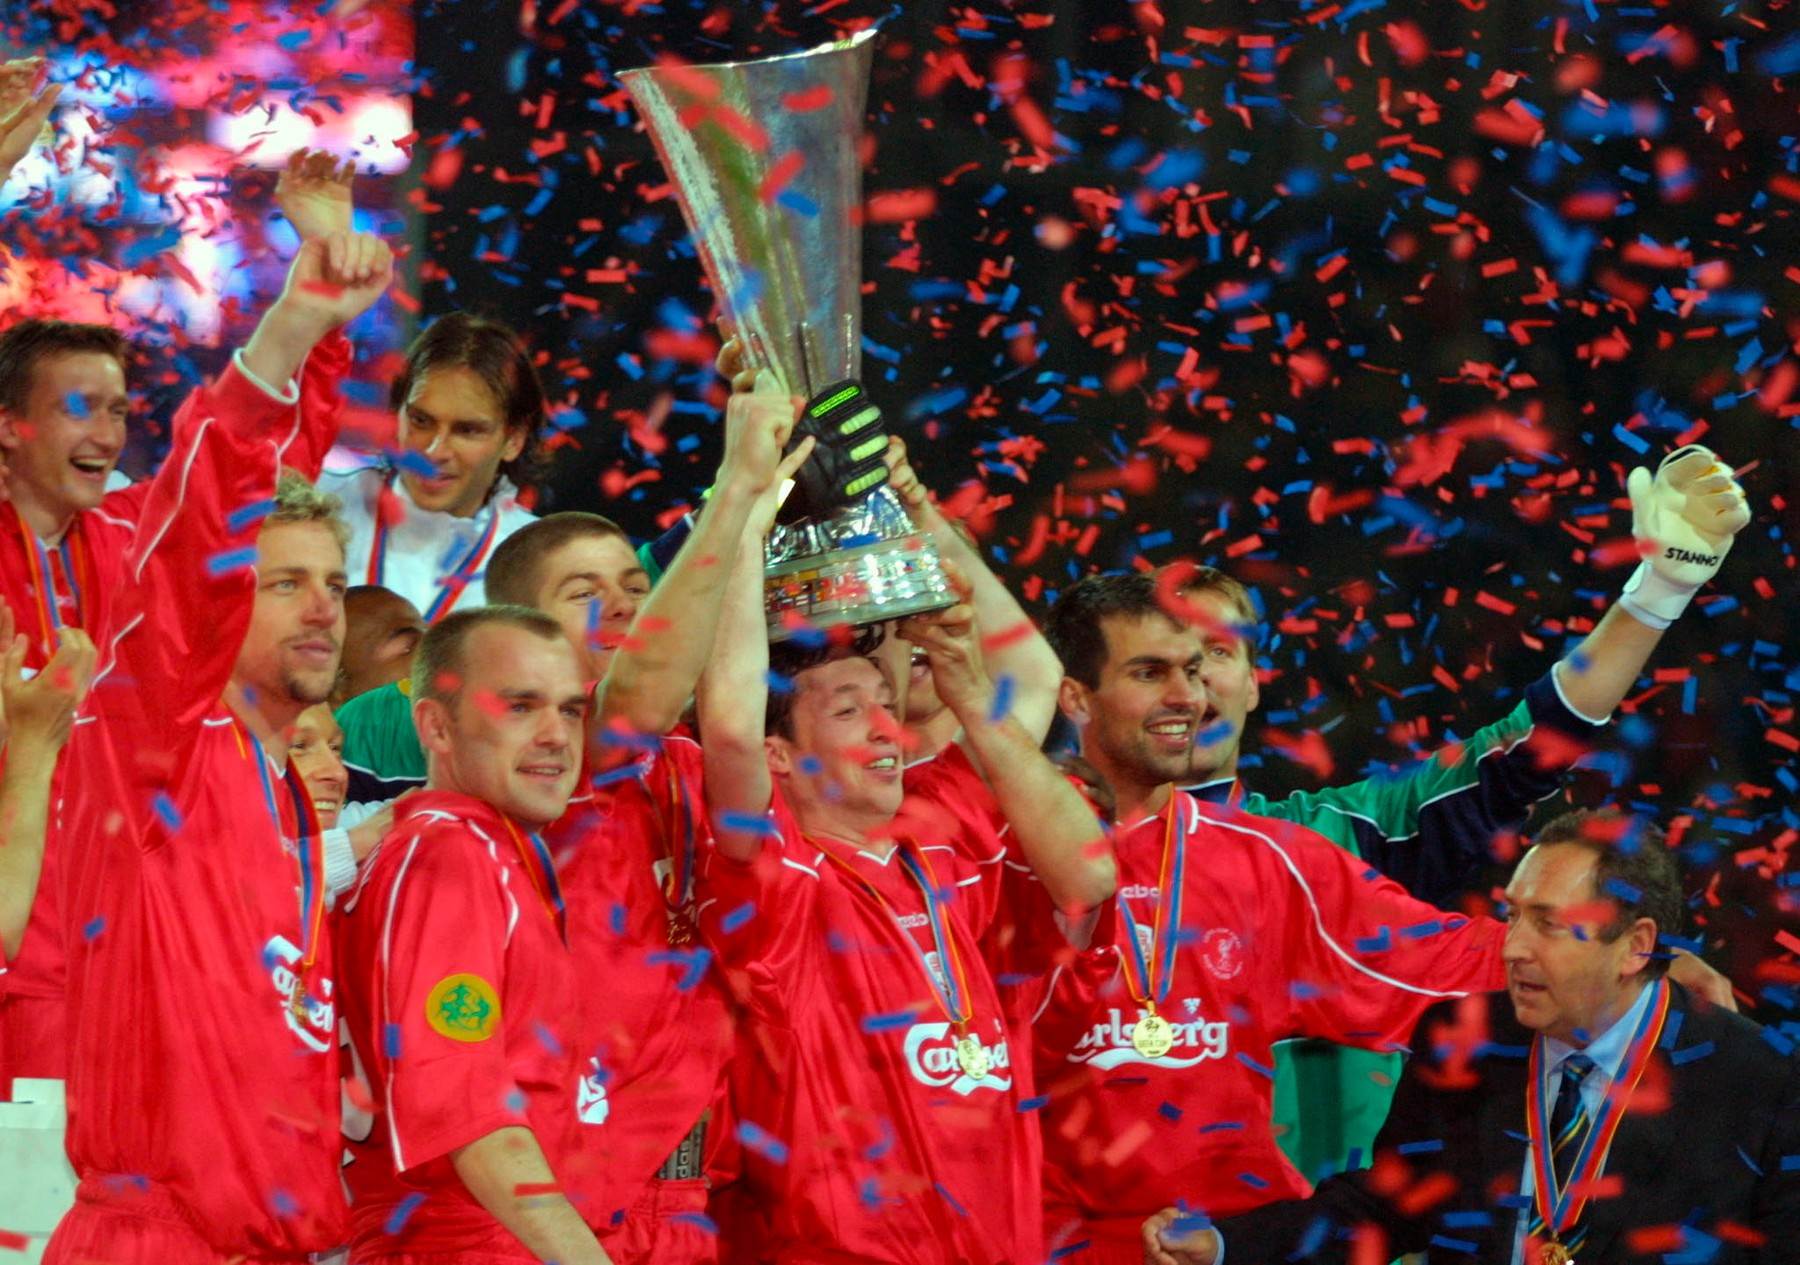  deni marfi liverpul alaves 5 4 finale kup uefa 2001 kockao drogirao se opijanje alkohol 